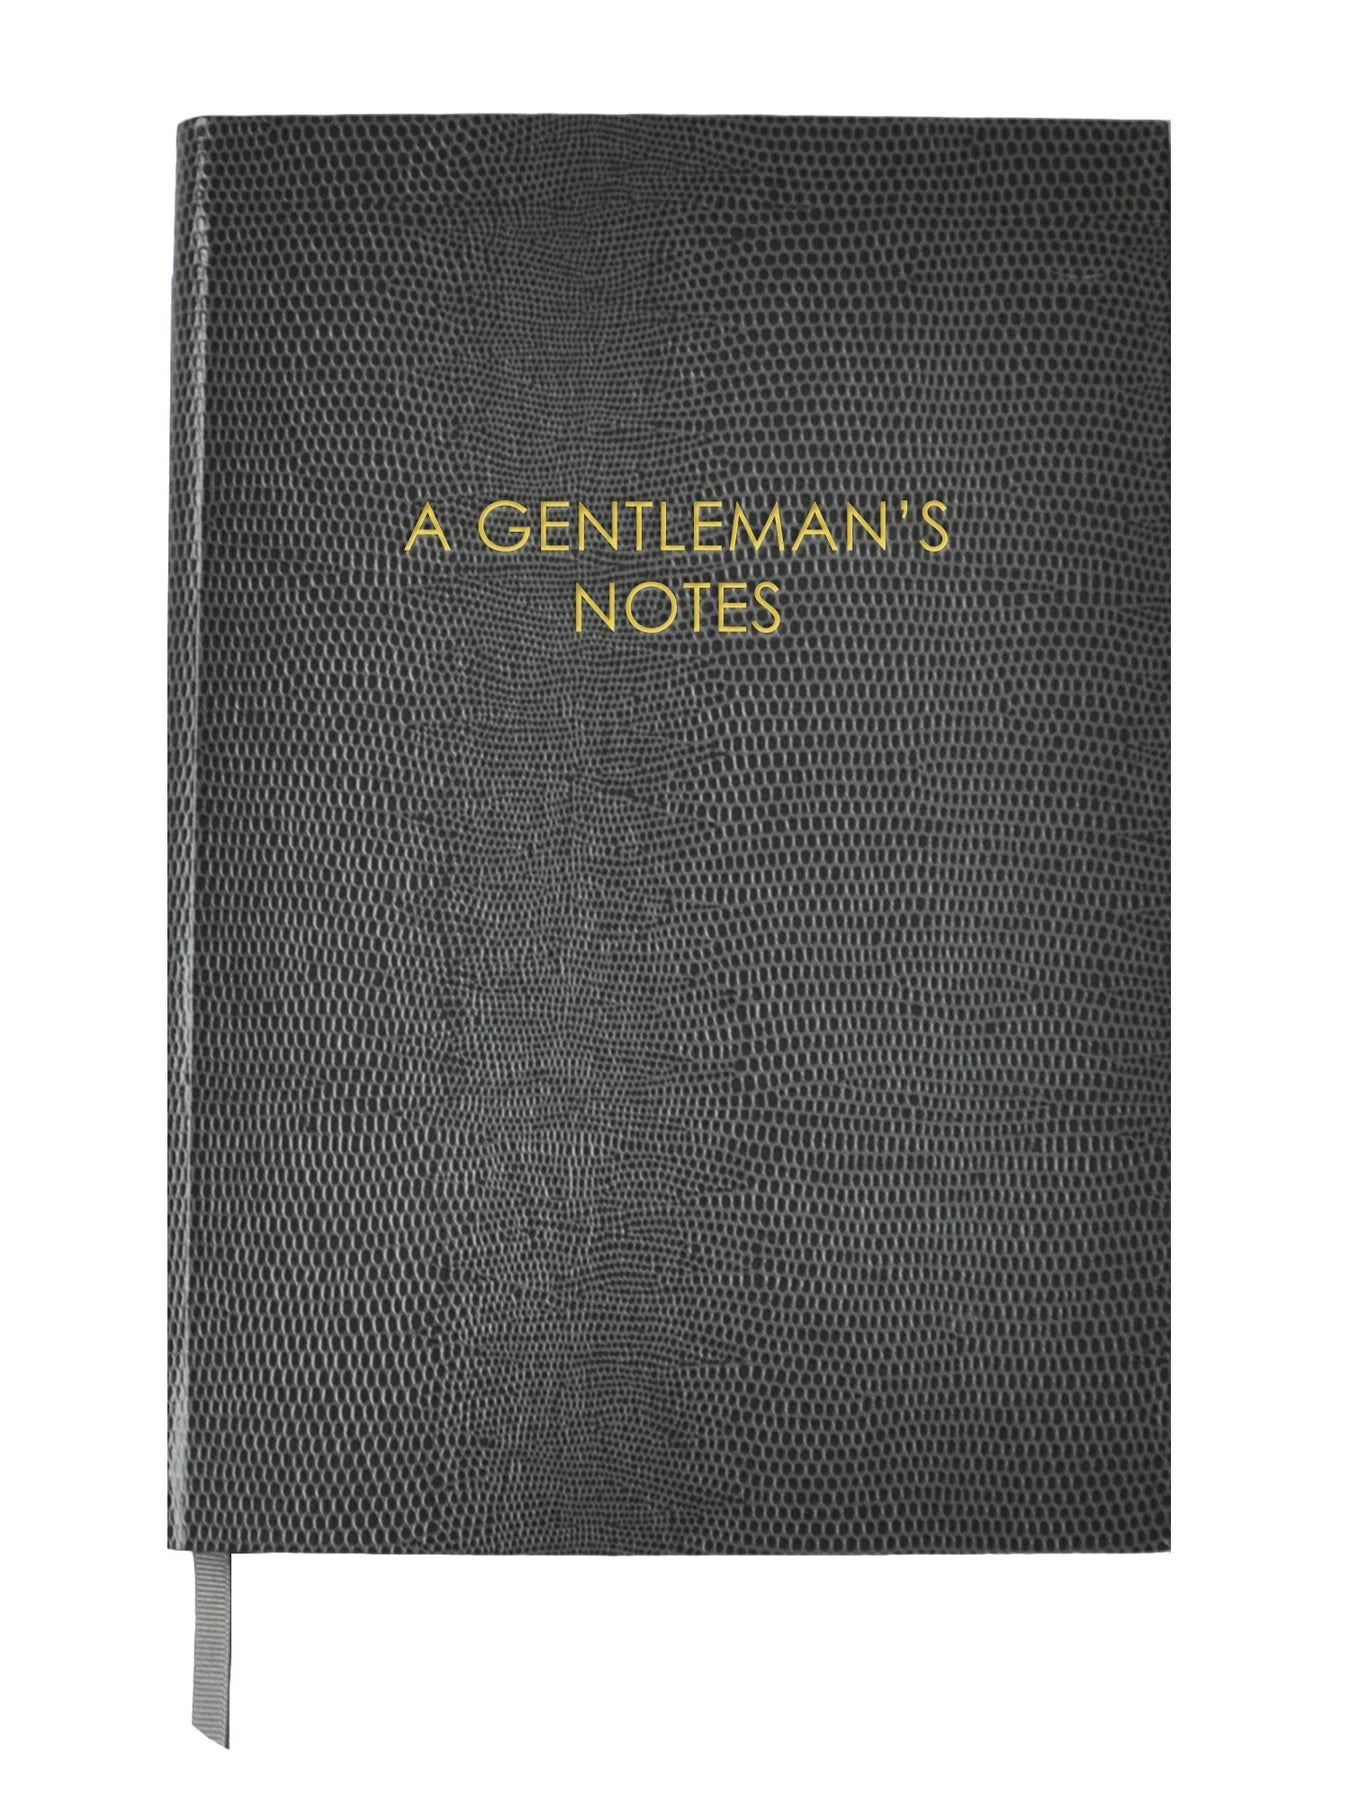 A Gentleman's Notes Notebook